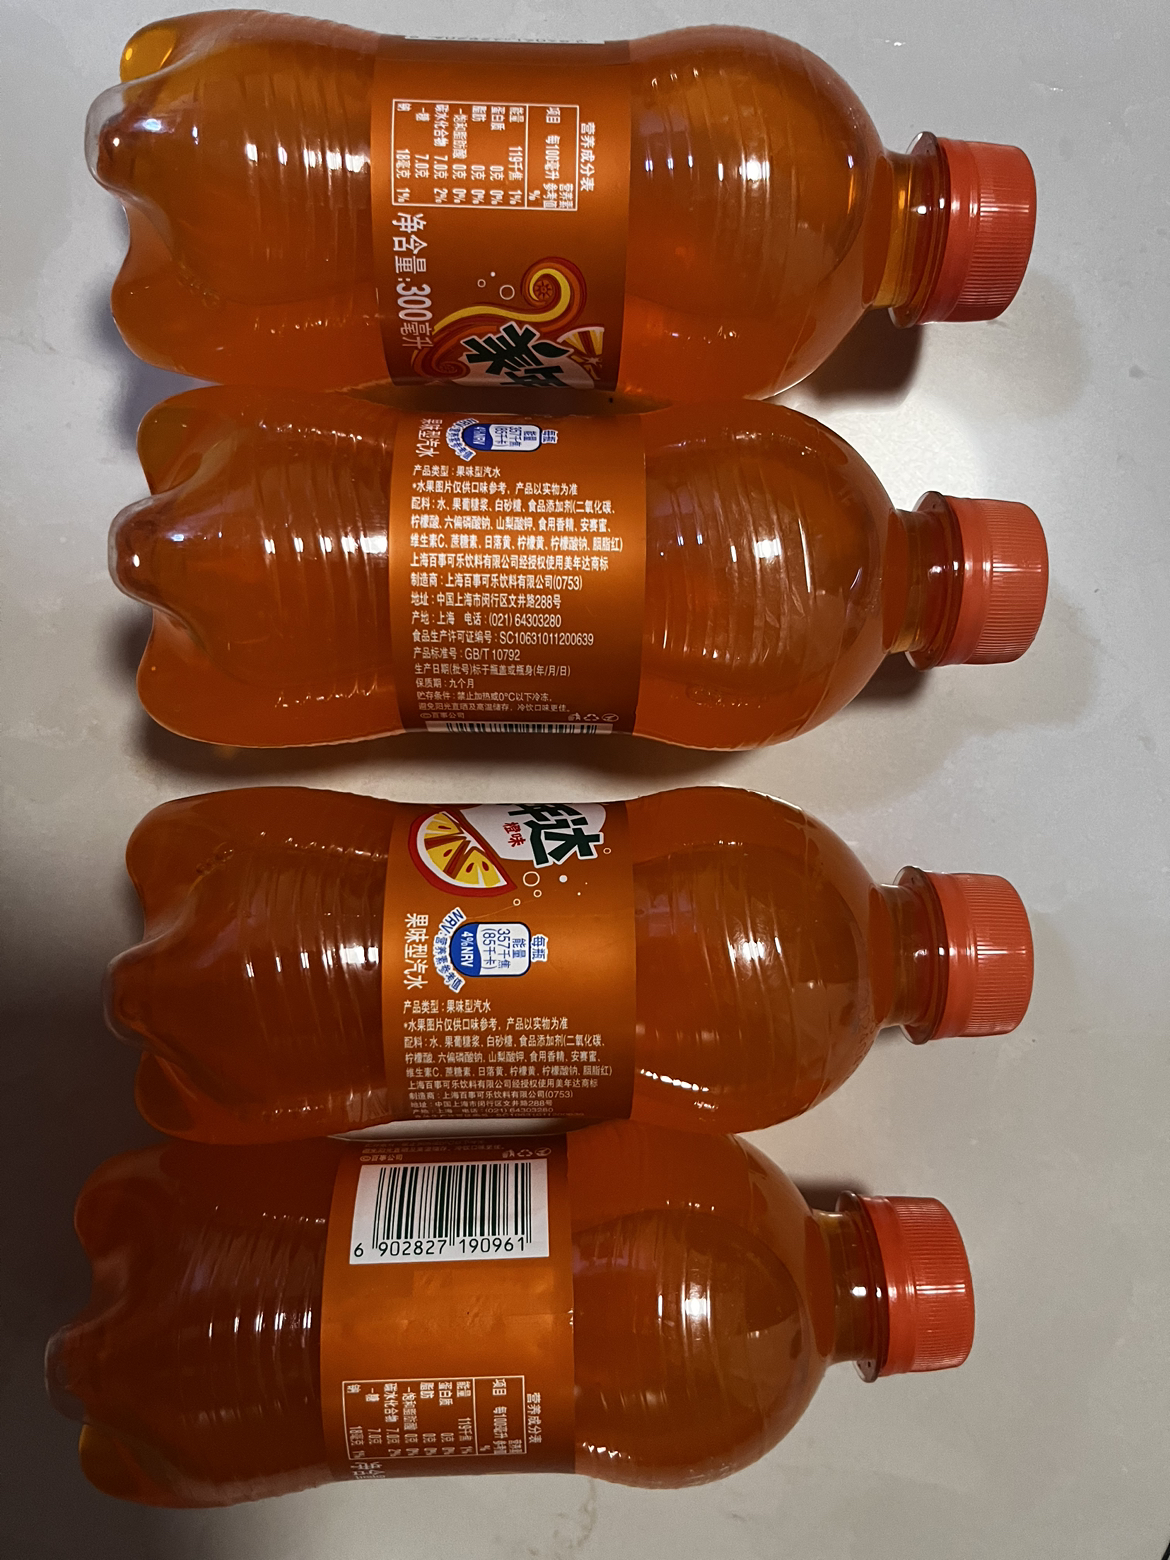 百事可乐 美年达 Mirinda 橙味汽水 碳酸饮料 300ml*4瓶 (新老包装随机发货)晒单图